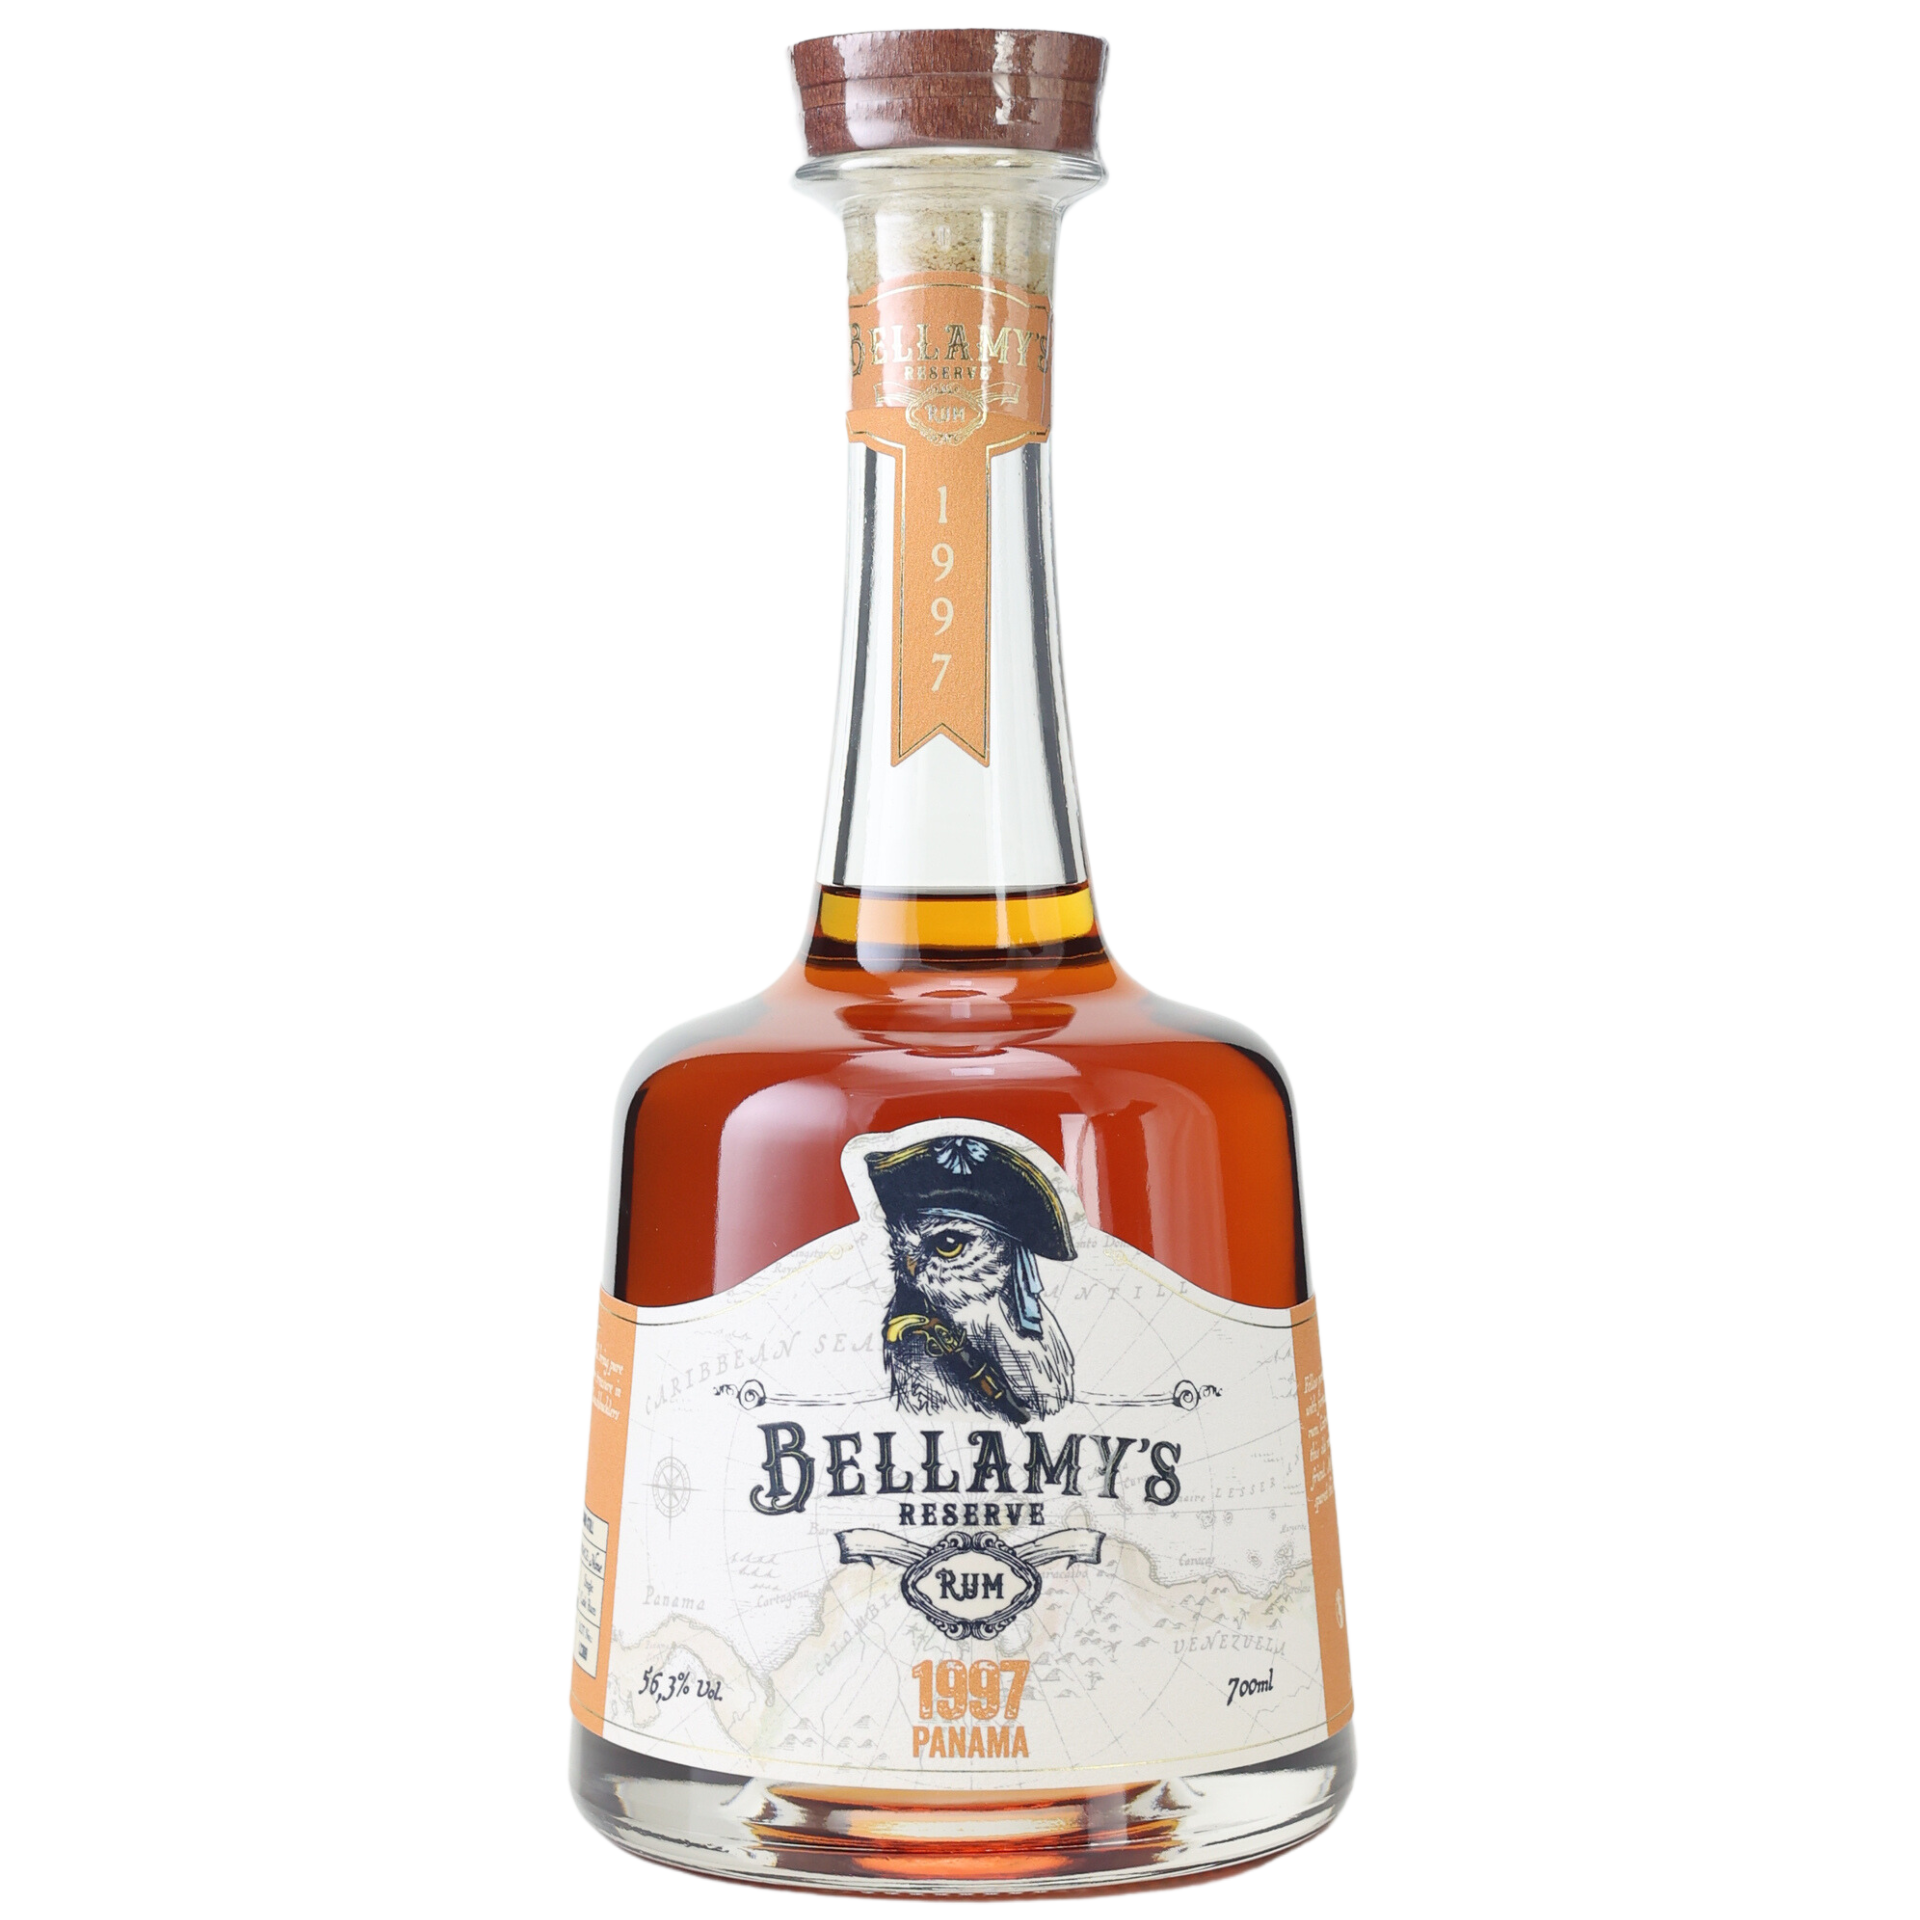 Bellamys Reserve Rum 1997 Panama Single Cask Rum 56,3% 0,7l